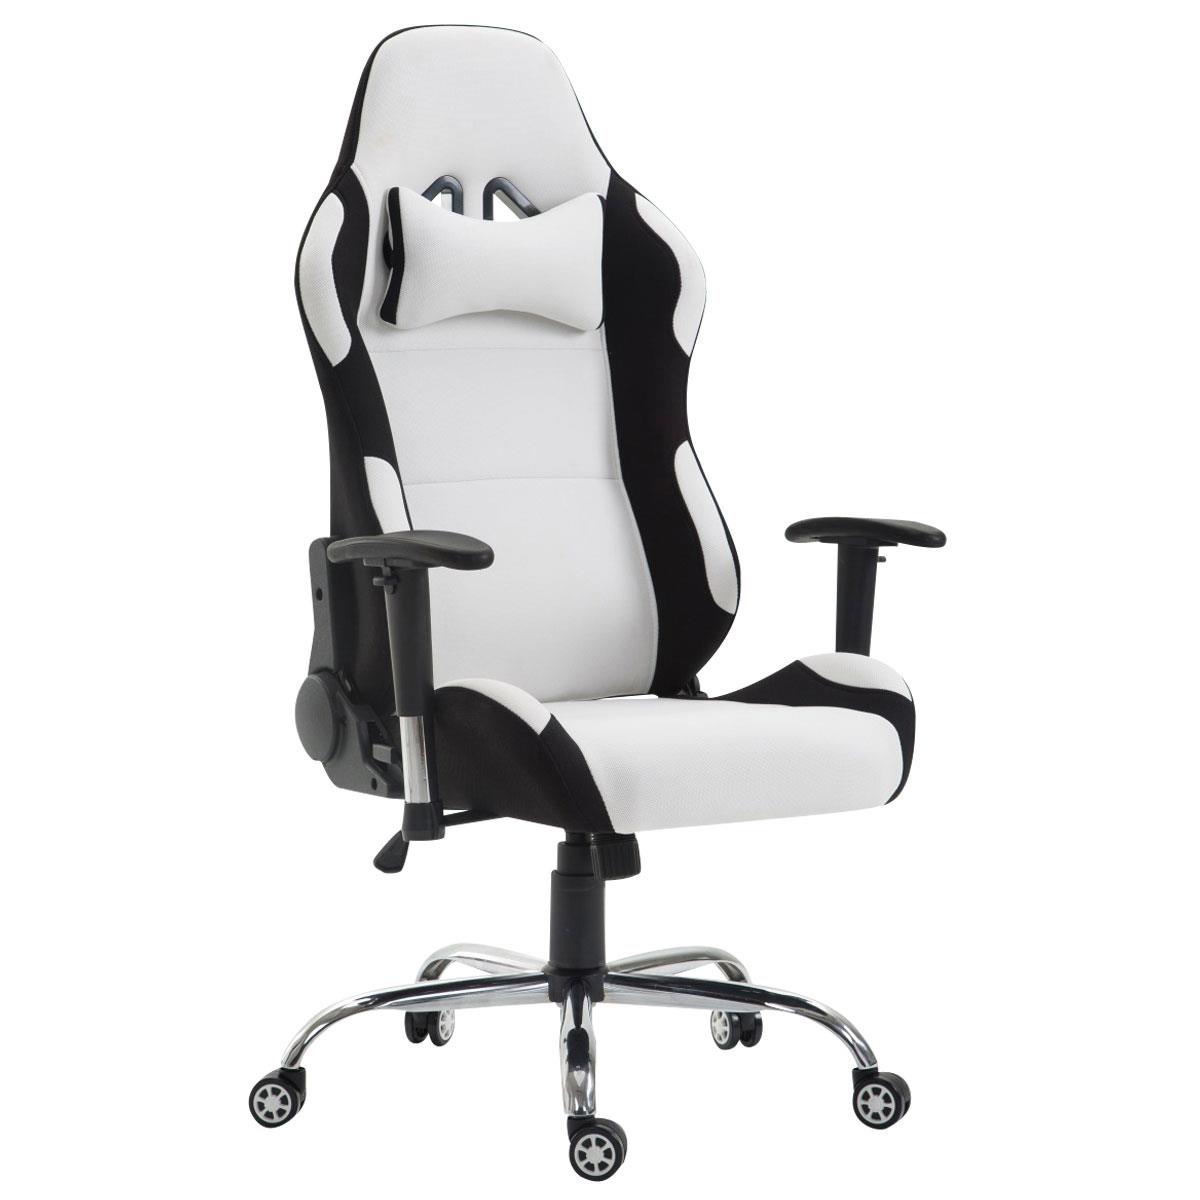 Cadeira Gaming ROSBY PANO, Design Desportivo e Muito Confortável, Cor Branco